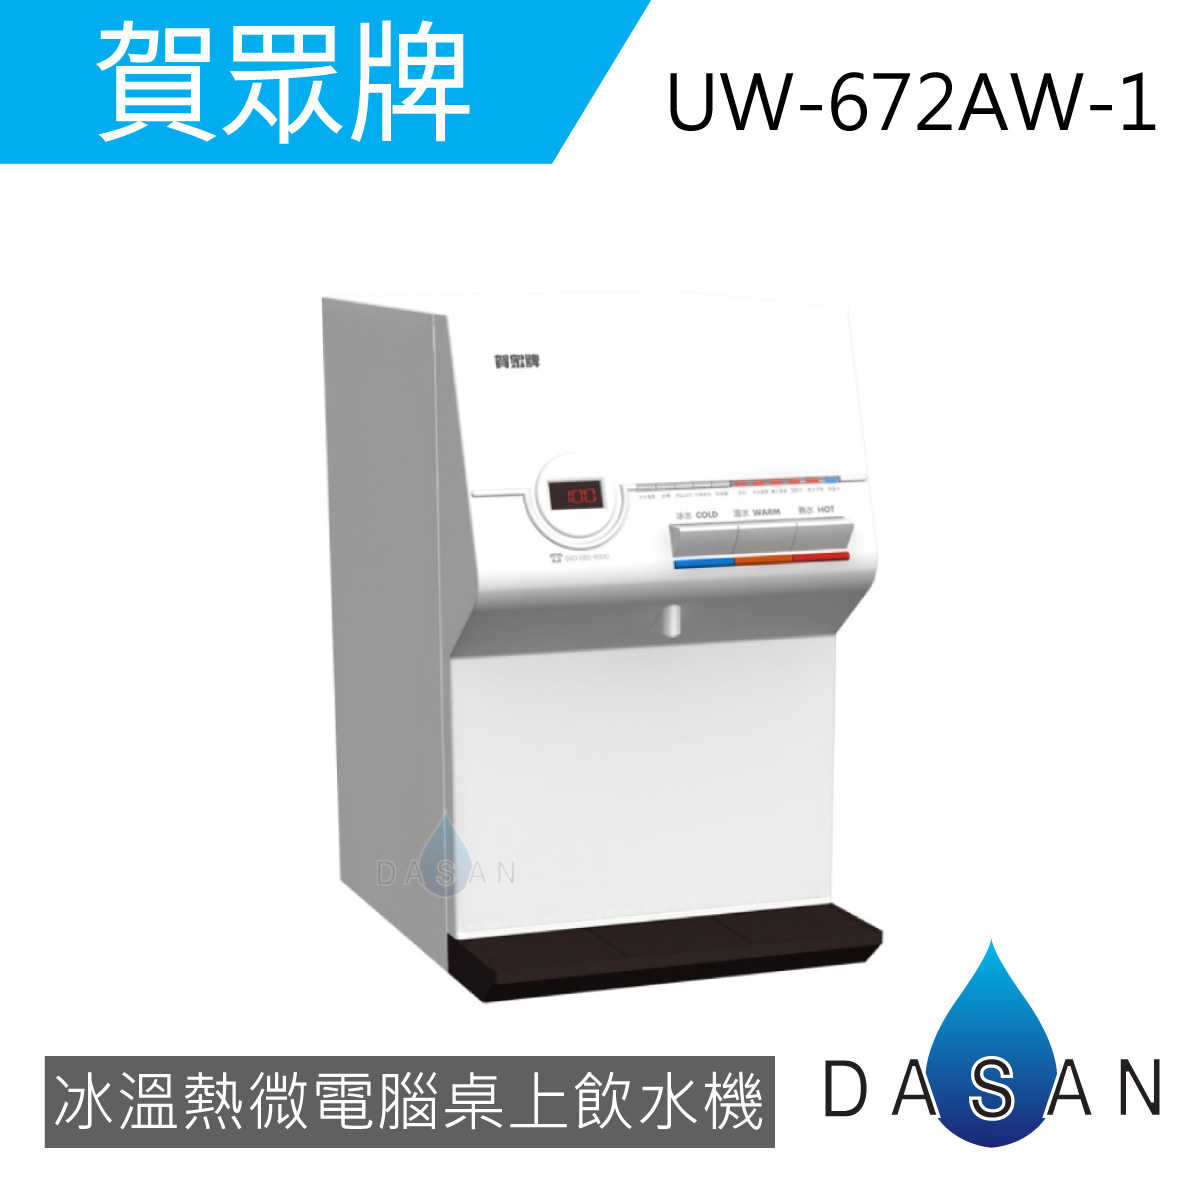 【賀眾牌】UW-672AW-1 UW-672AW 672AW 微電腦冰溫熱桌上補水機 需另搭配淨水器